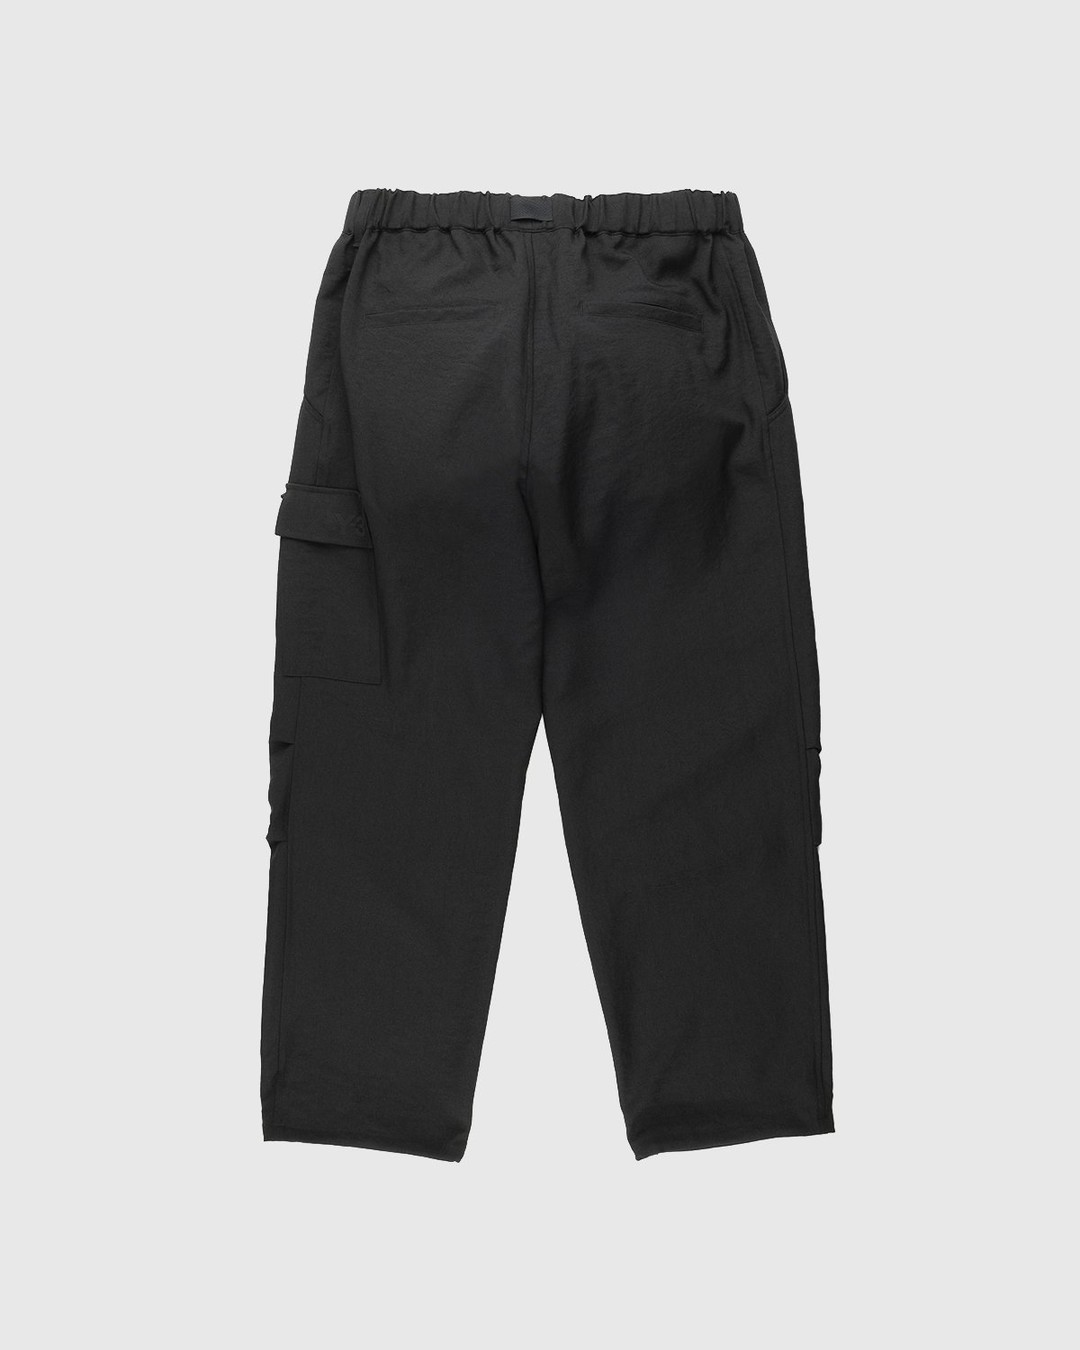 Y-3 – Classic Sport Uniform Cargo Pants Black - Pants - Black - Image 2